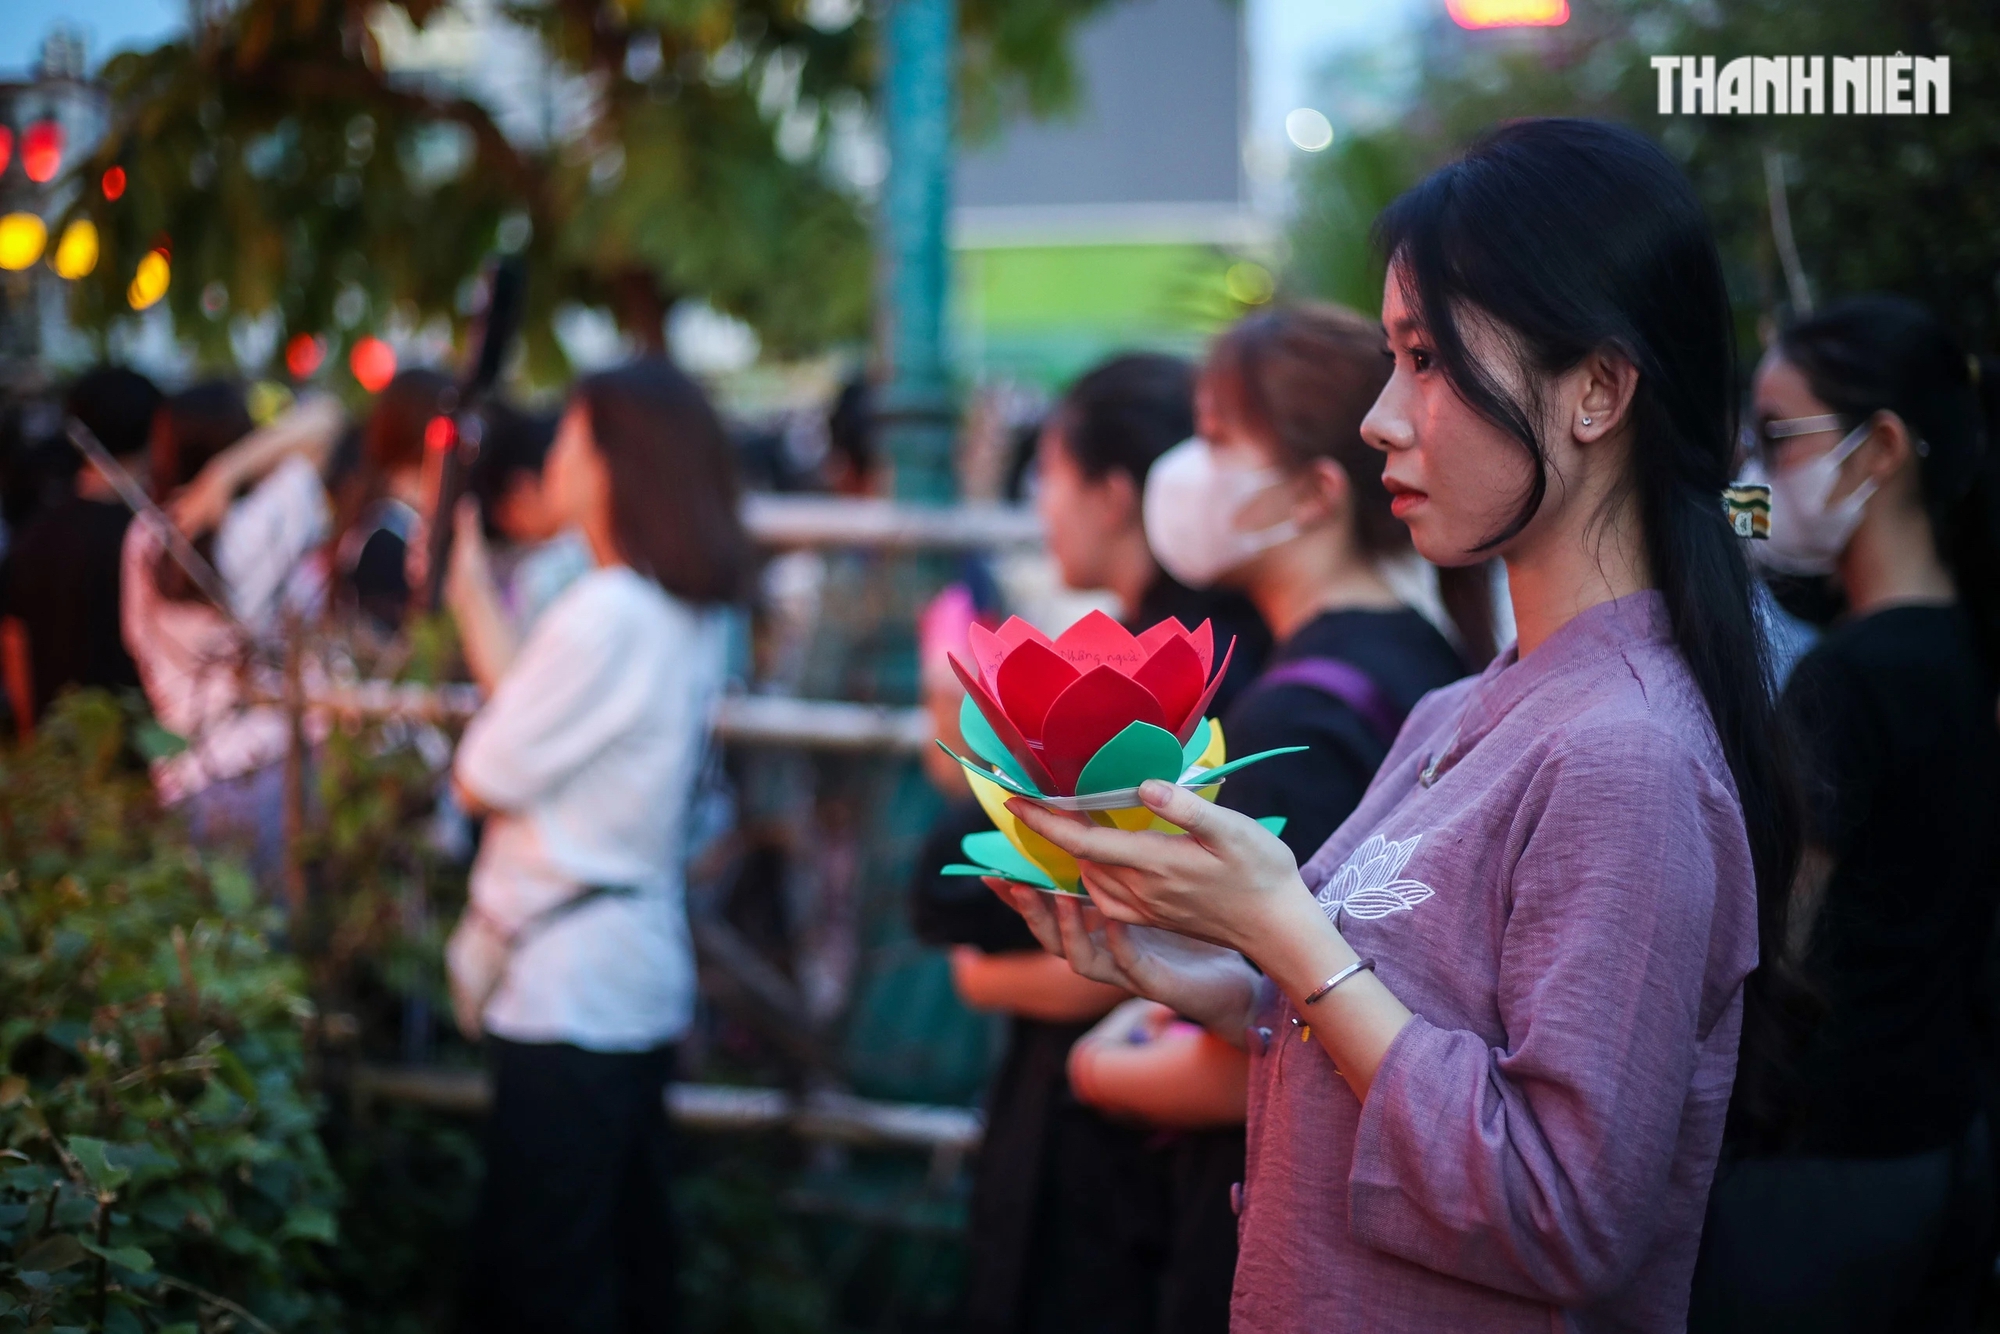 Bên trong khuôn viên chùa, mỗi người tham dự sẽ được trao miễn phí một đèn hoa đăng và có ghi lên đó những ước nguyện, mong muốn tốt đẹp nhất cho bản thân, gia đình và người thương yêu